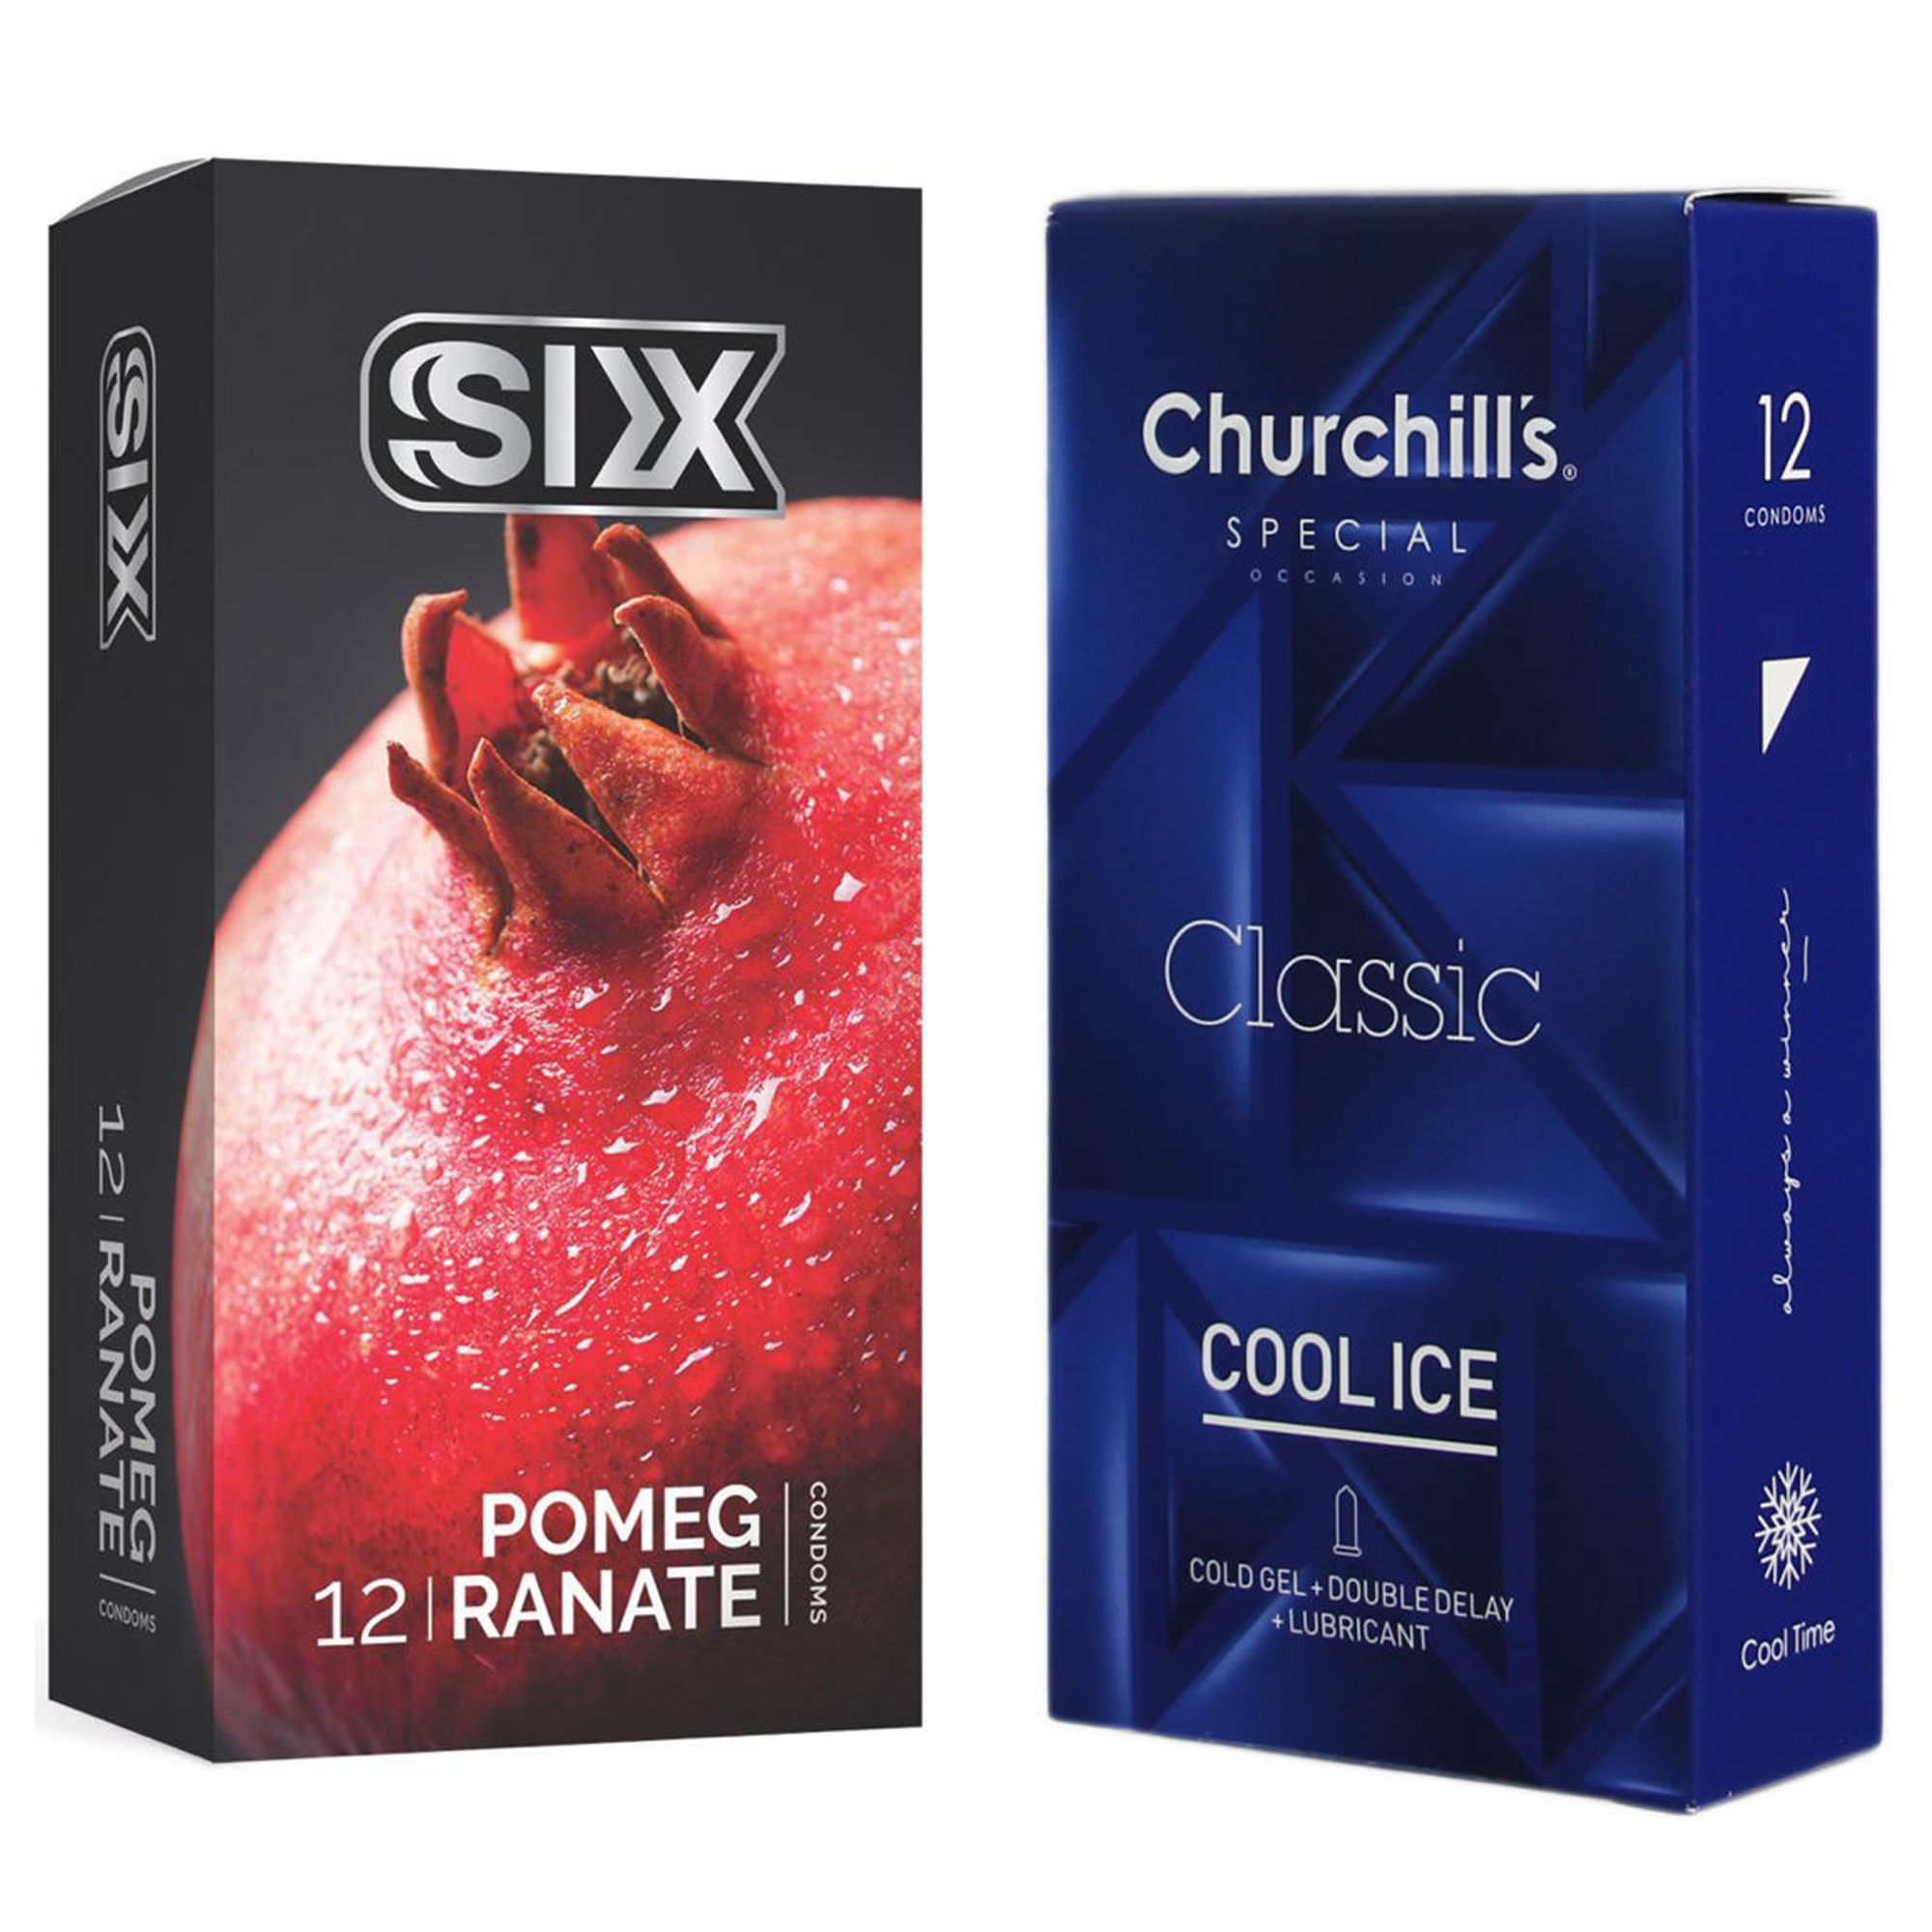 نکته خرید - قیمت روز کاندوم چرچیلز مدل Cool Ice بسته 12 عددی به همراه کاندوم سیکس مدل انار بسته 12 عددی خرید